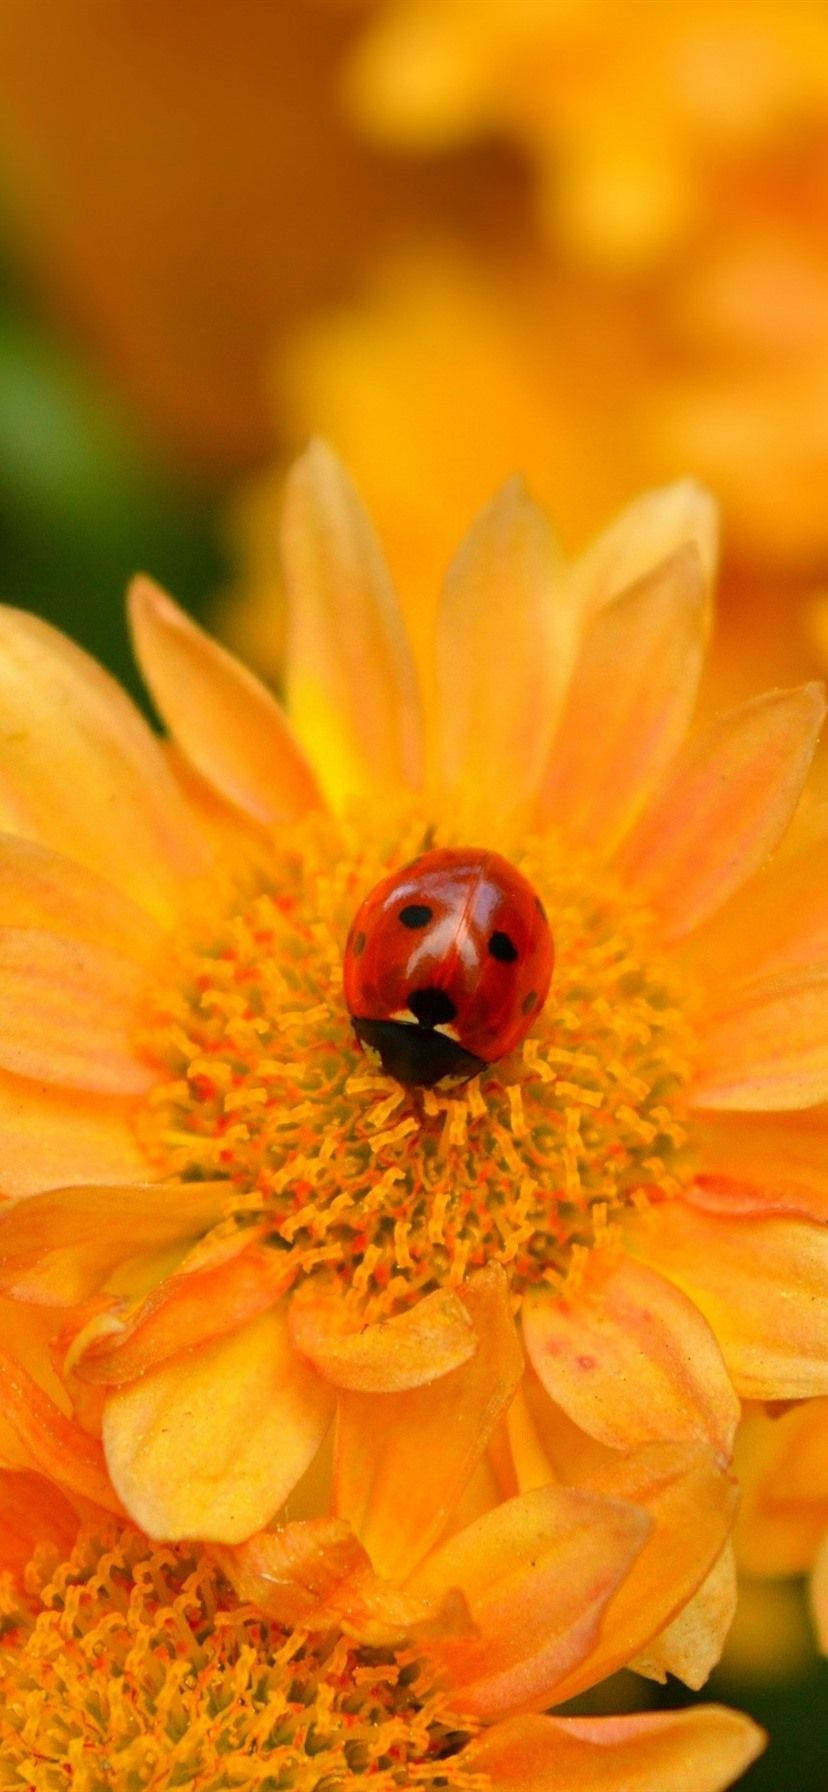 Ladybug Beetle On Orange Corn Daisy Background